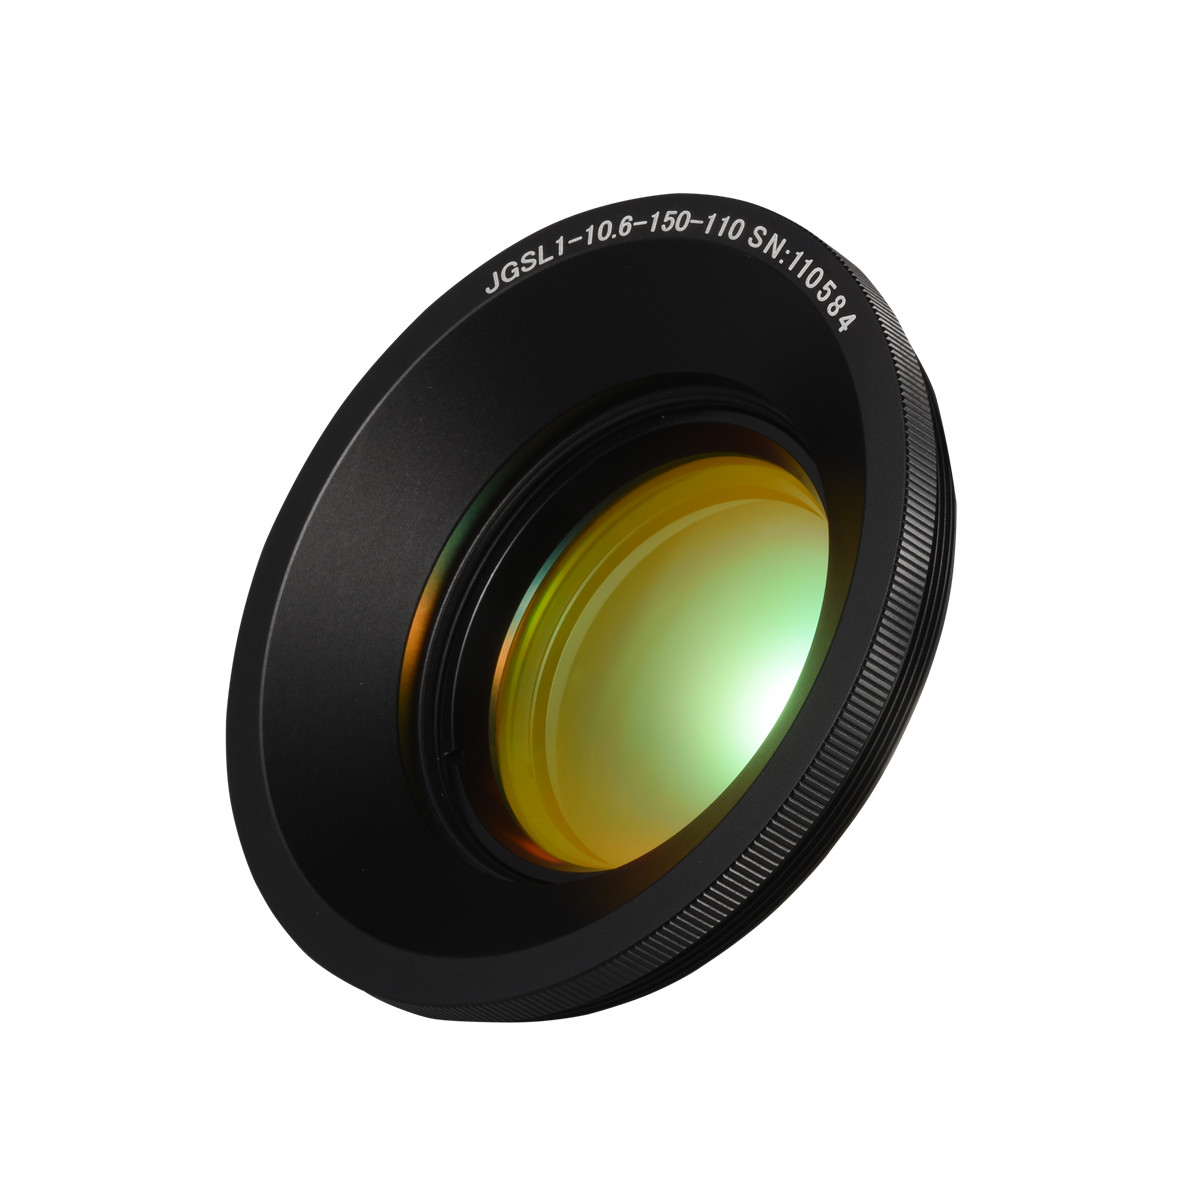 10.6um F-theta Lens